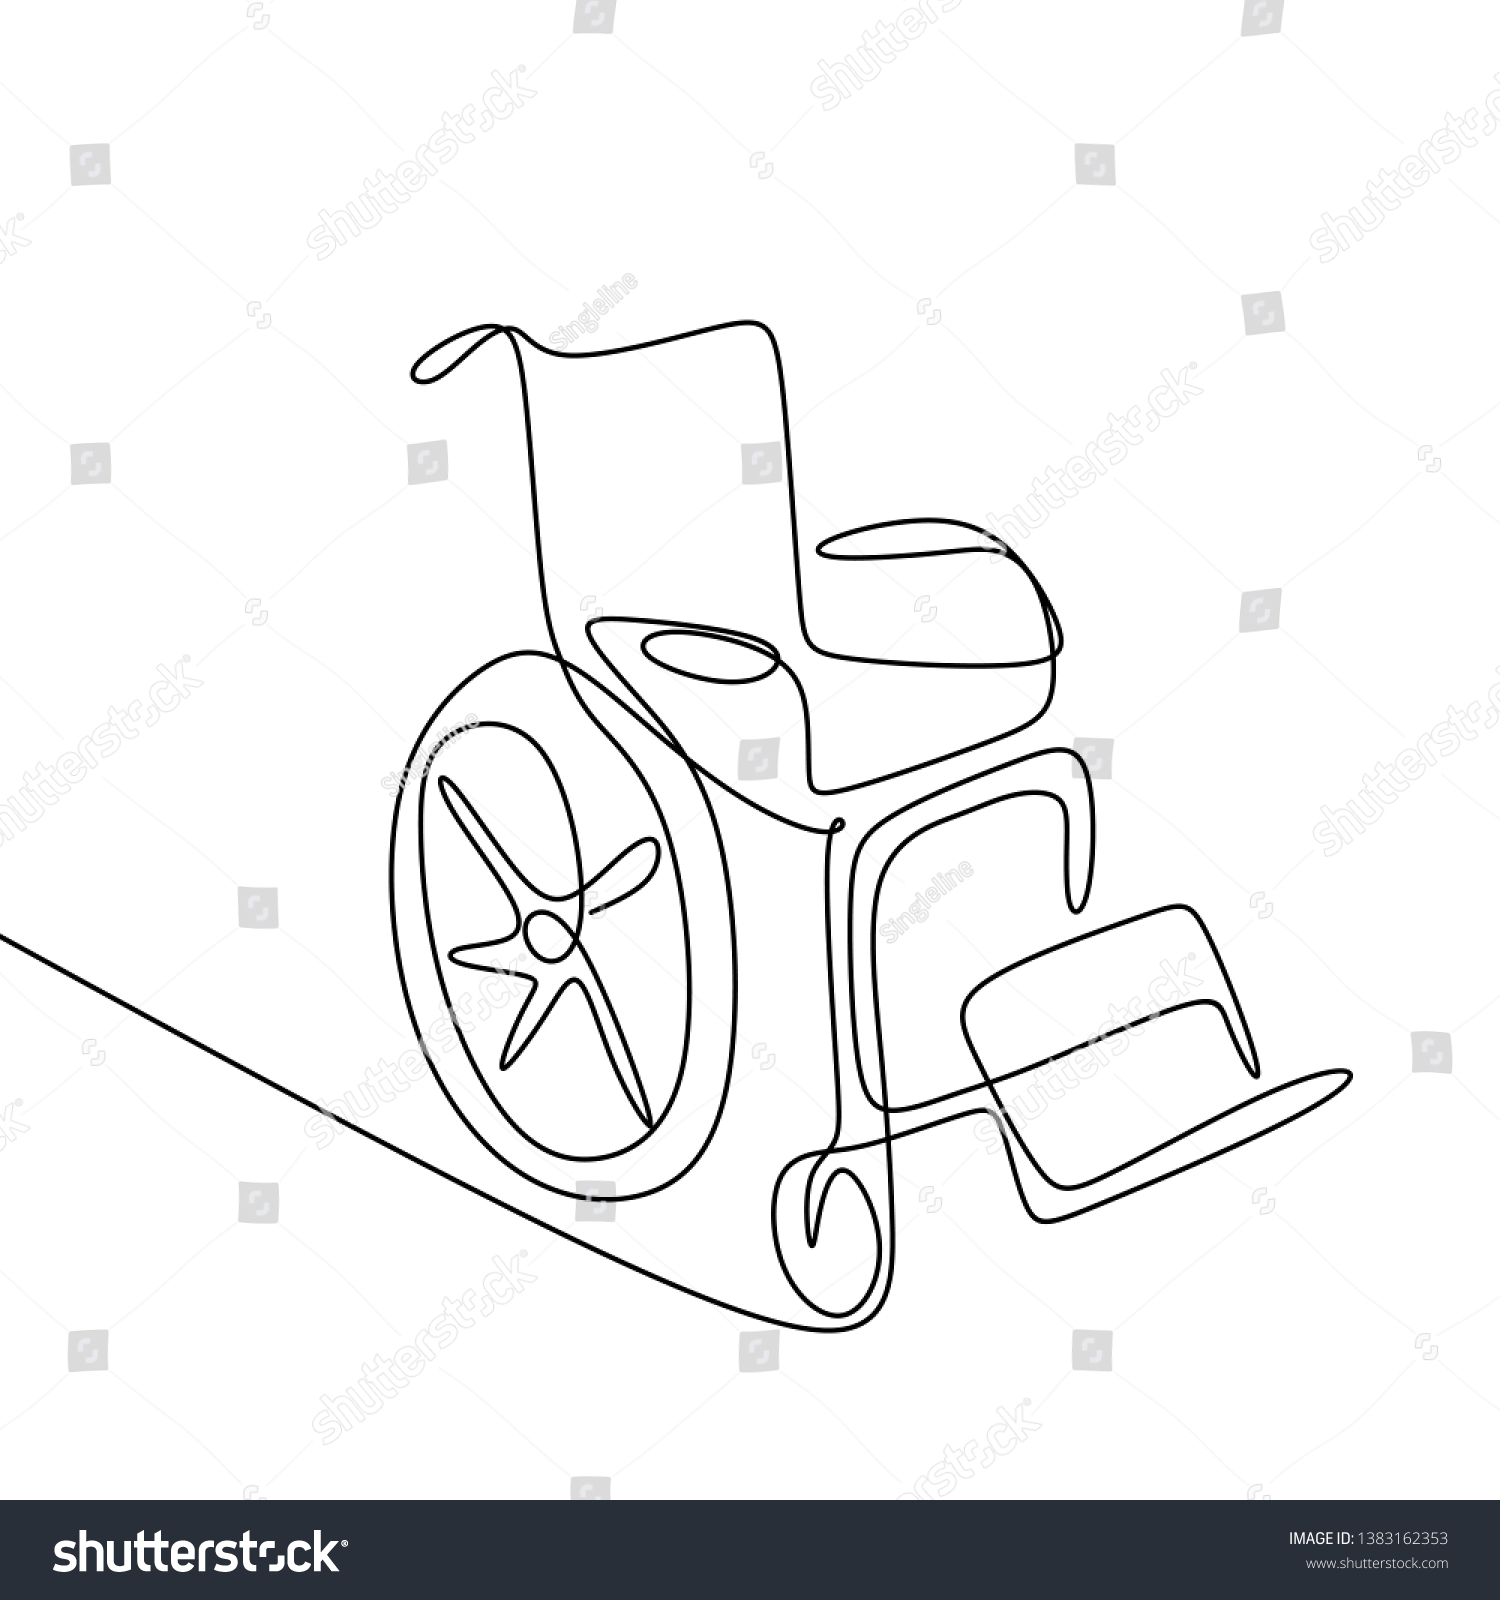 Wheelchair line drawing Stock Vectors, Images & Vector Art Shutterstock